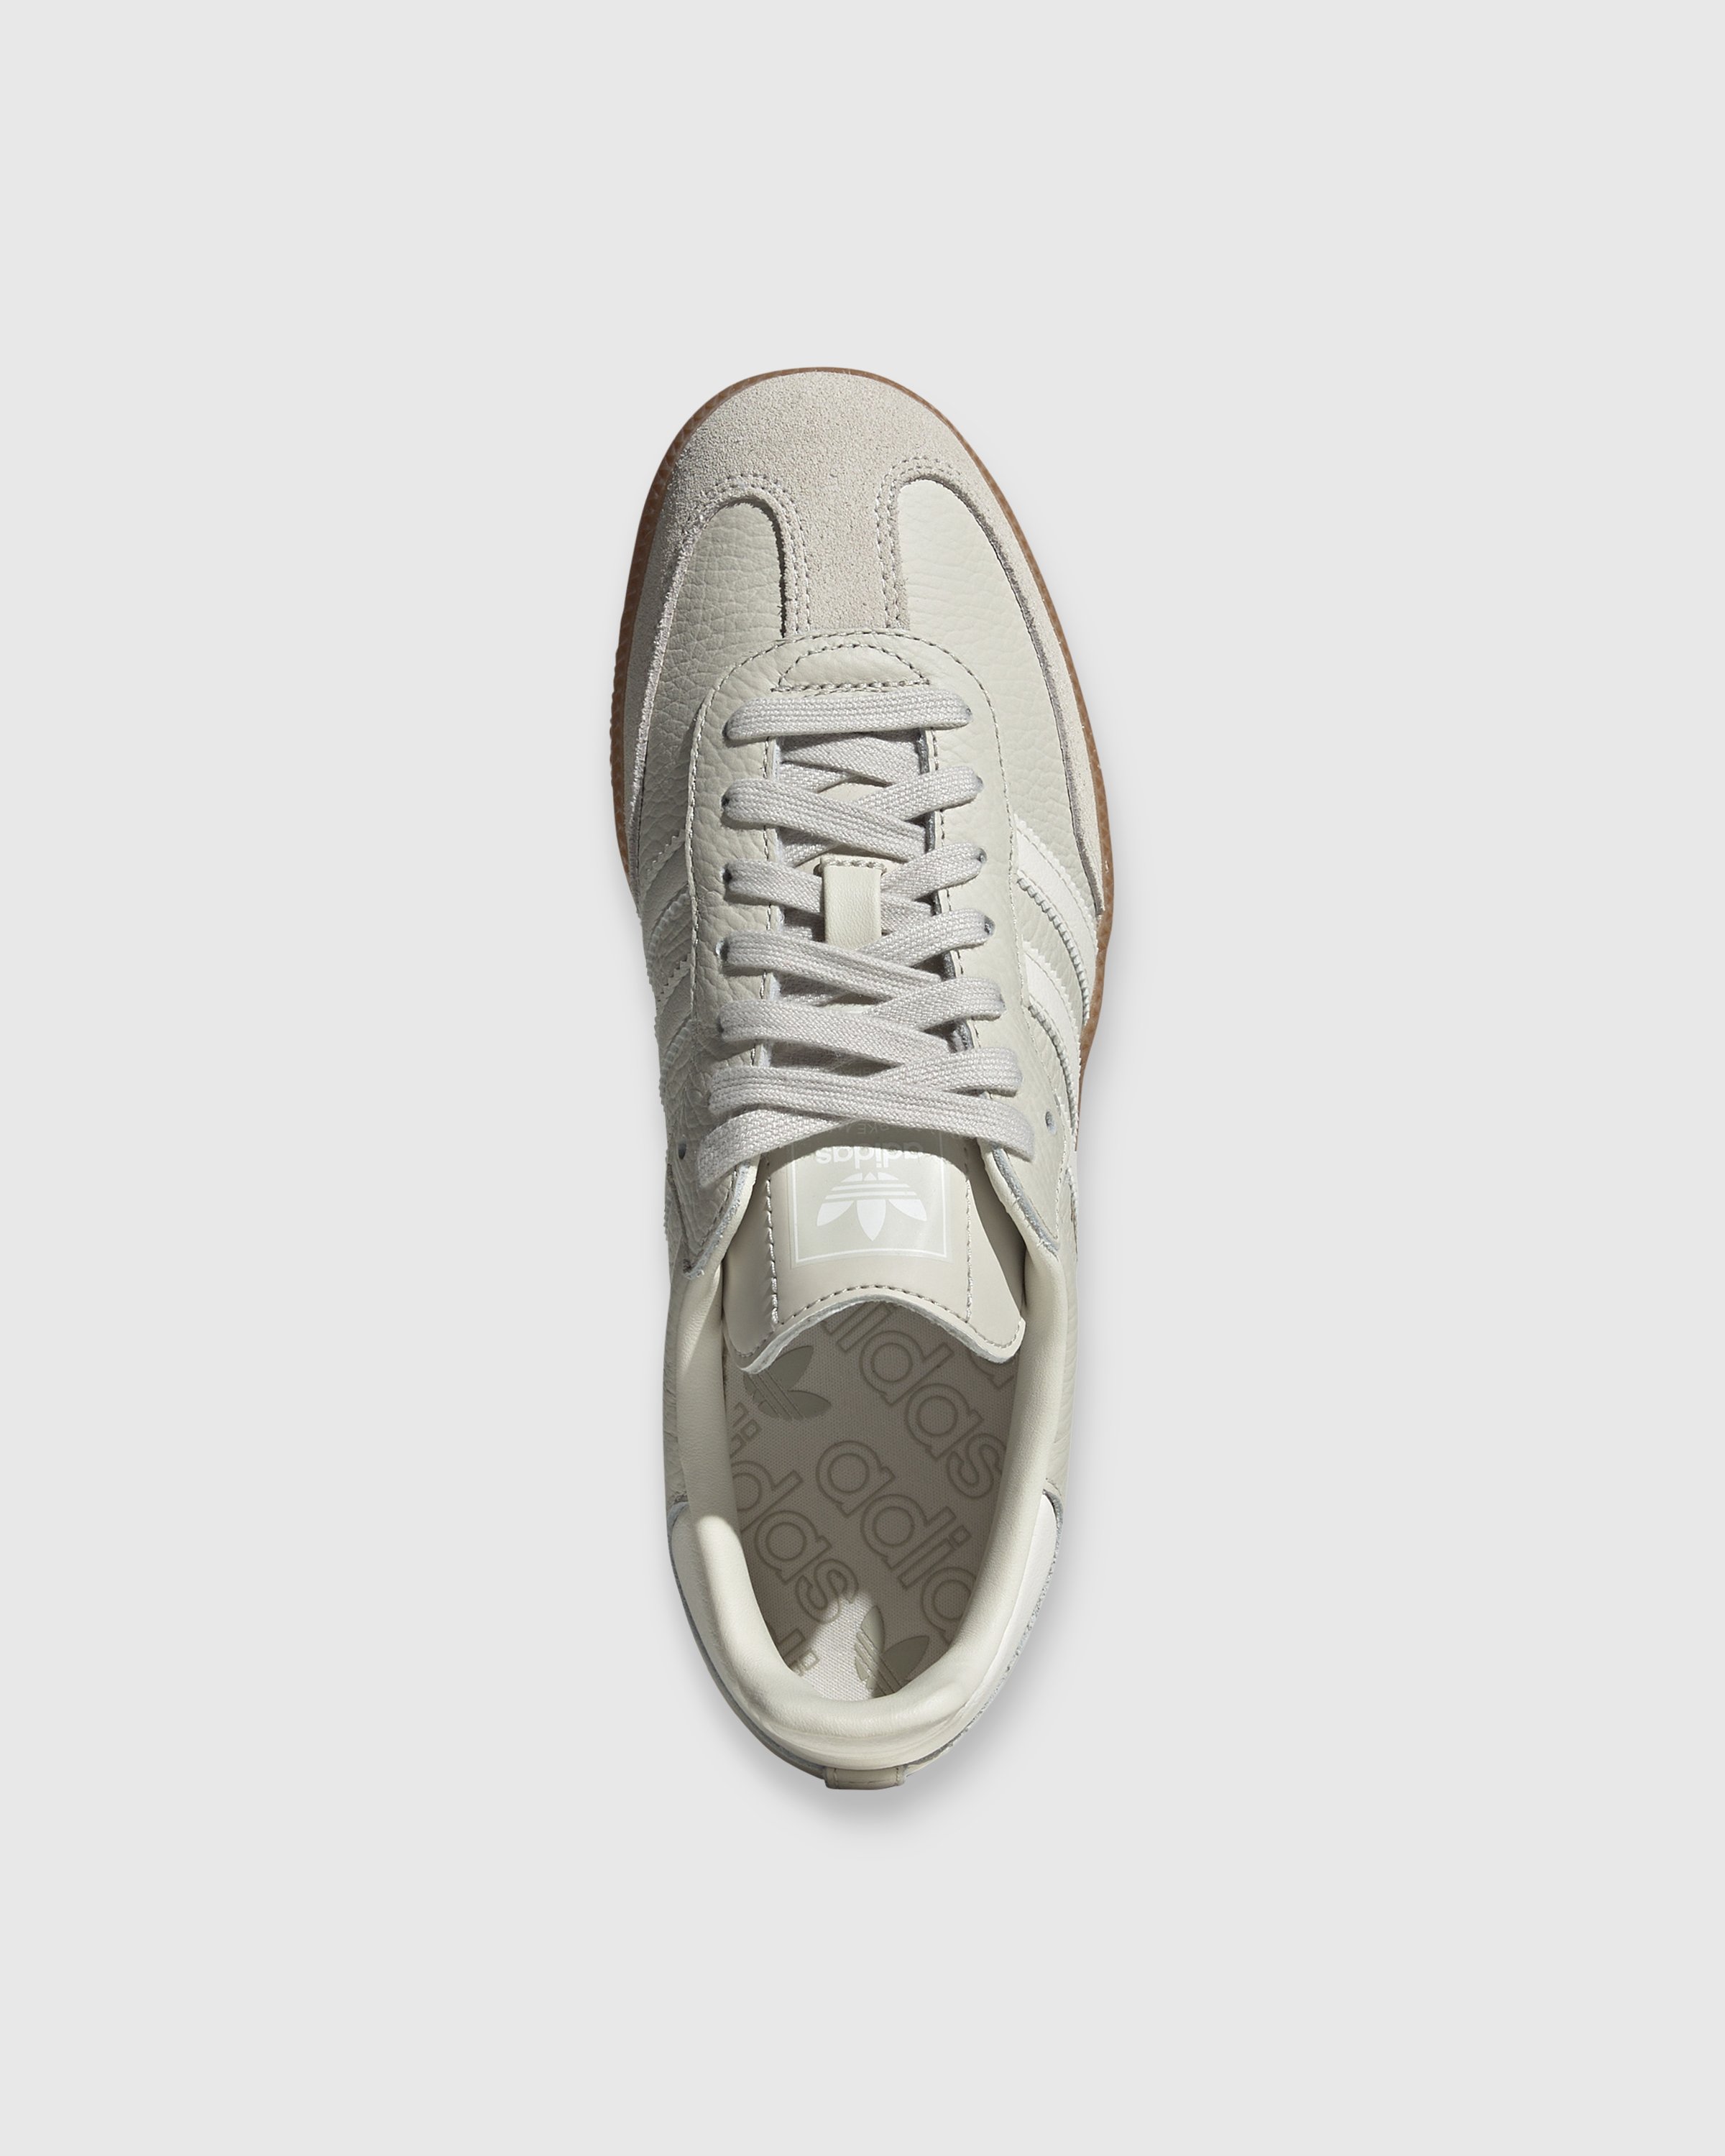 Adidas - Samba OG White Aluminium - Footwear - White - Image 5